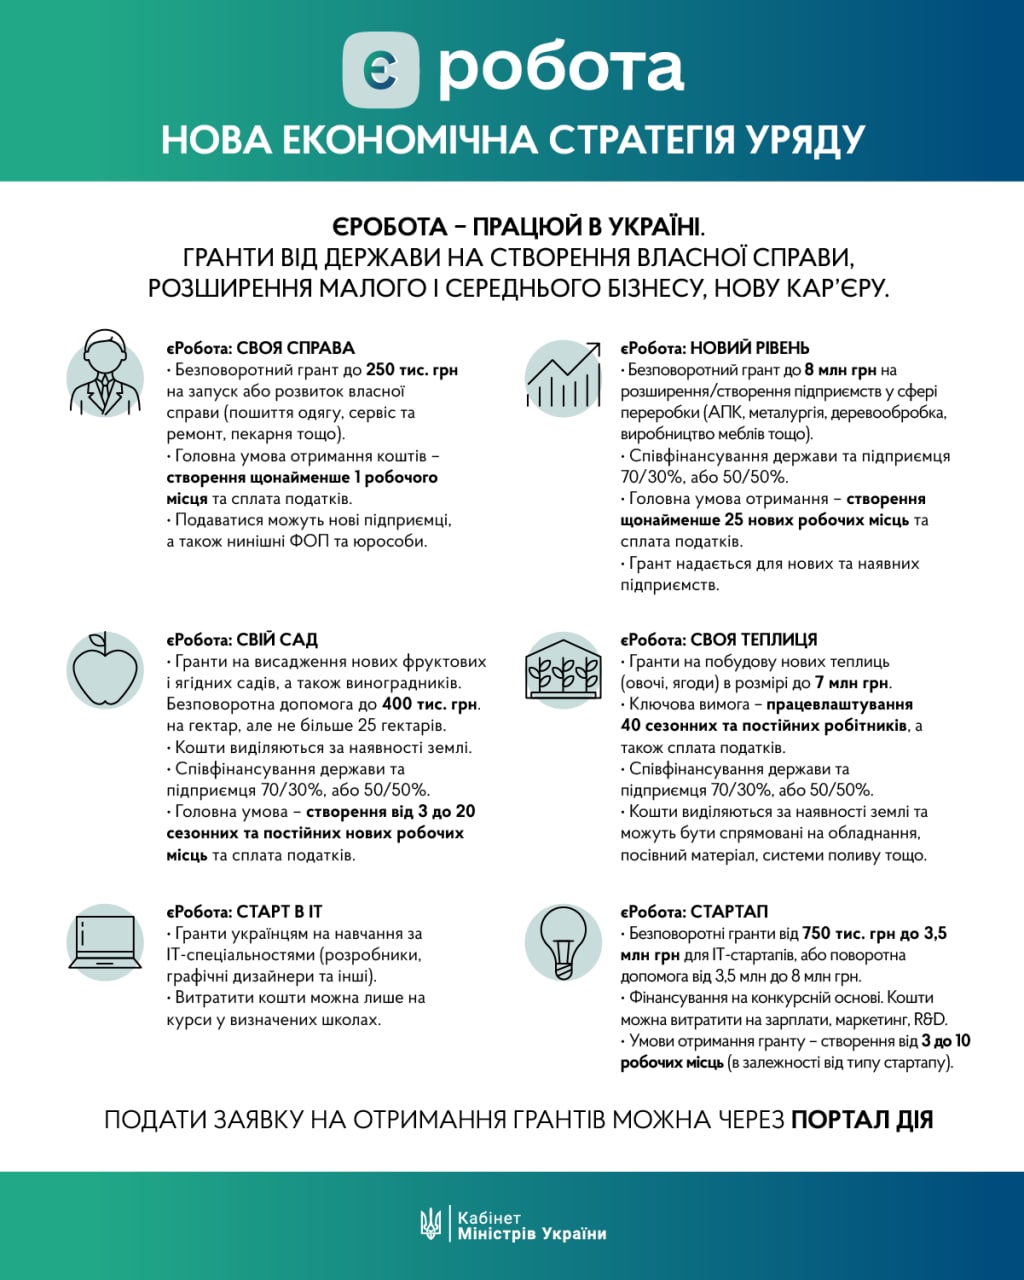 В Україні запустили програму єРобота: на що можна отримати грант